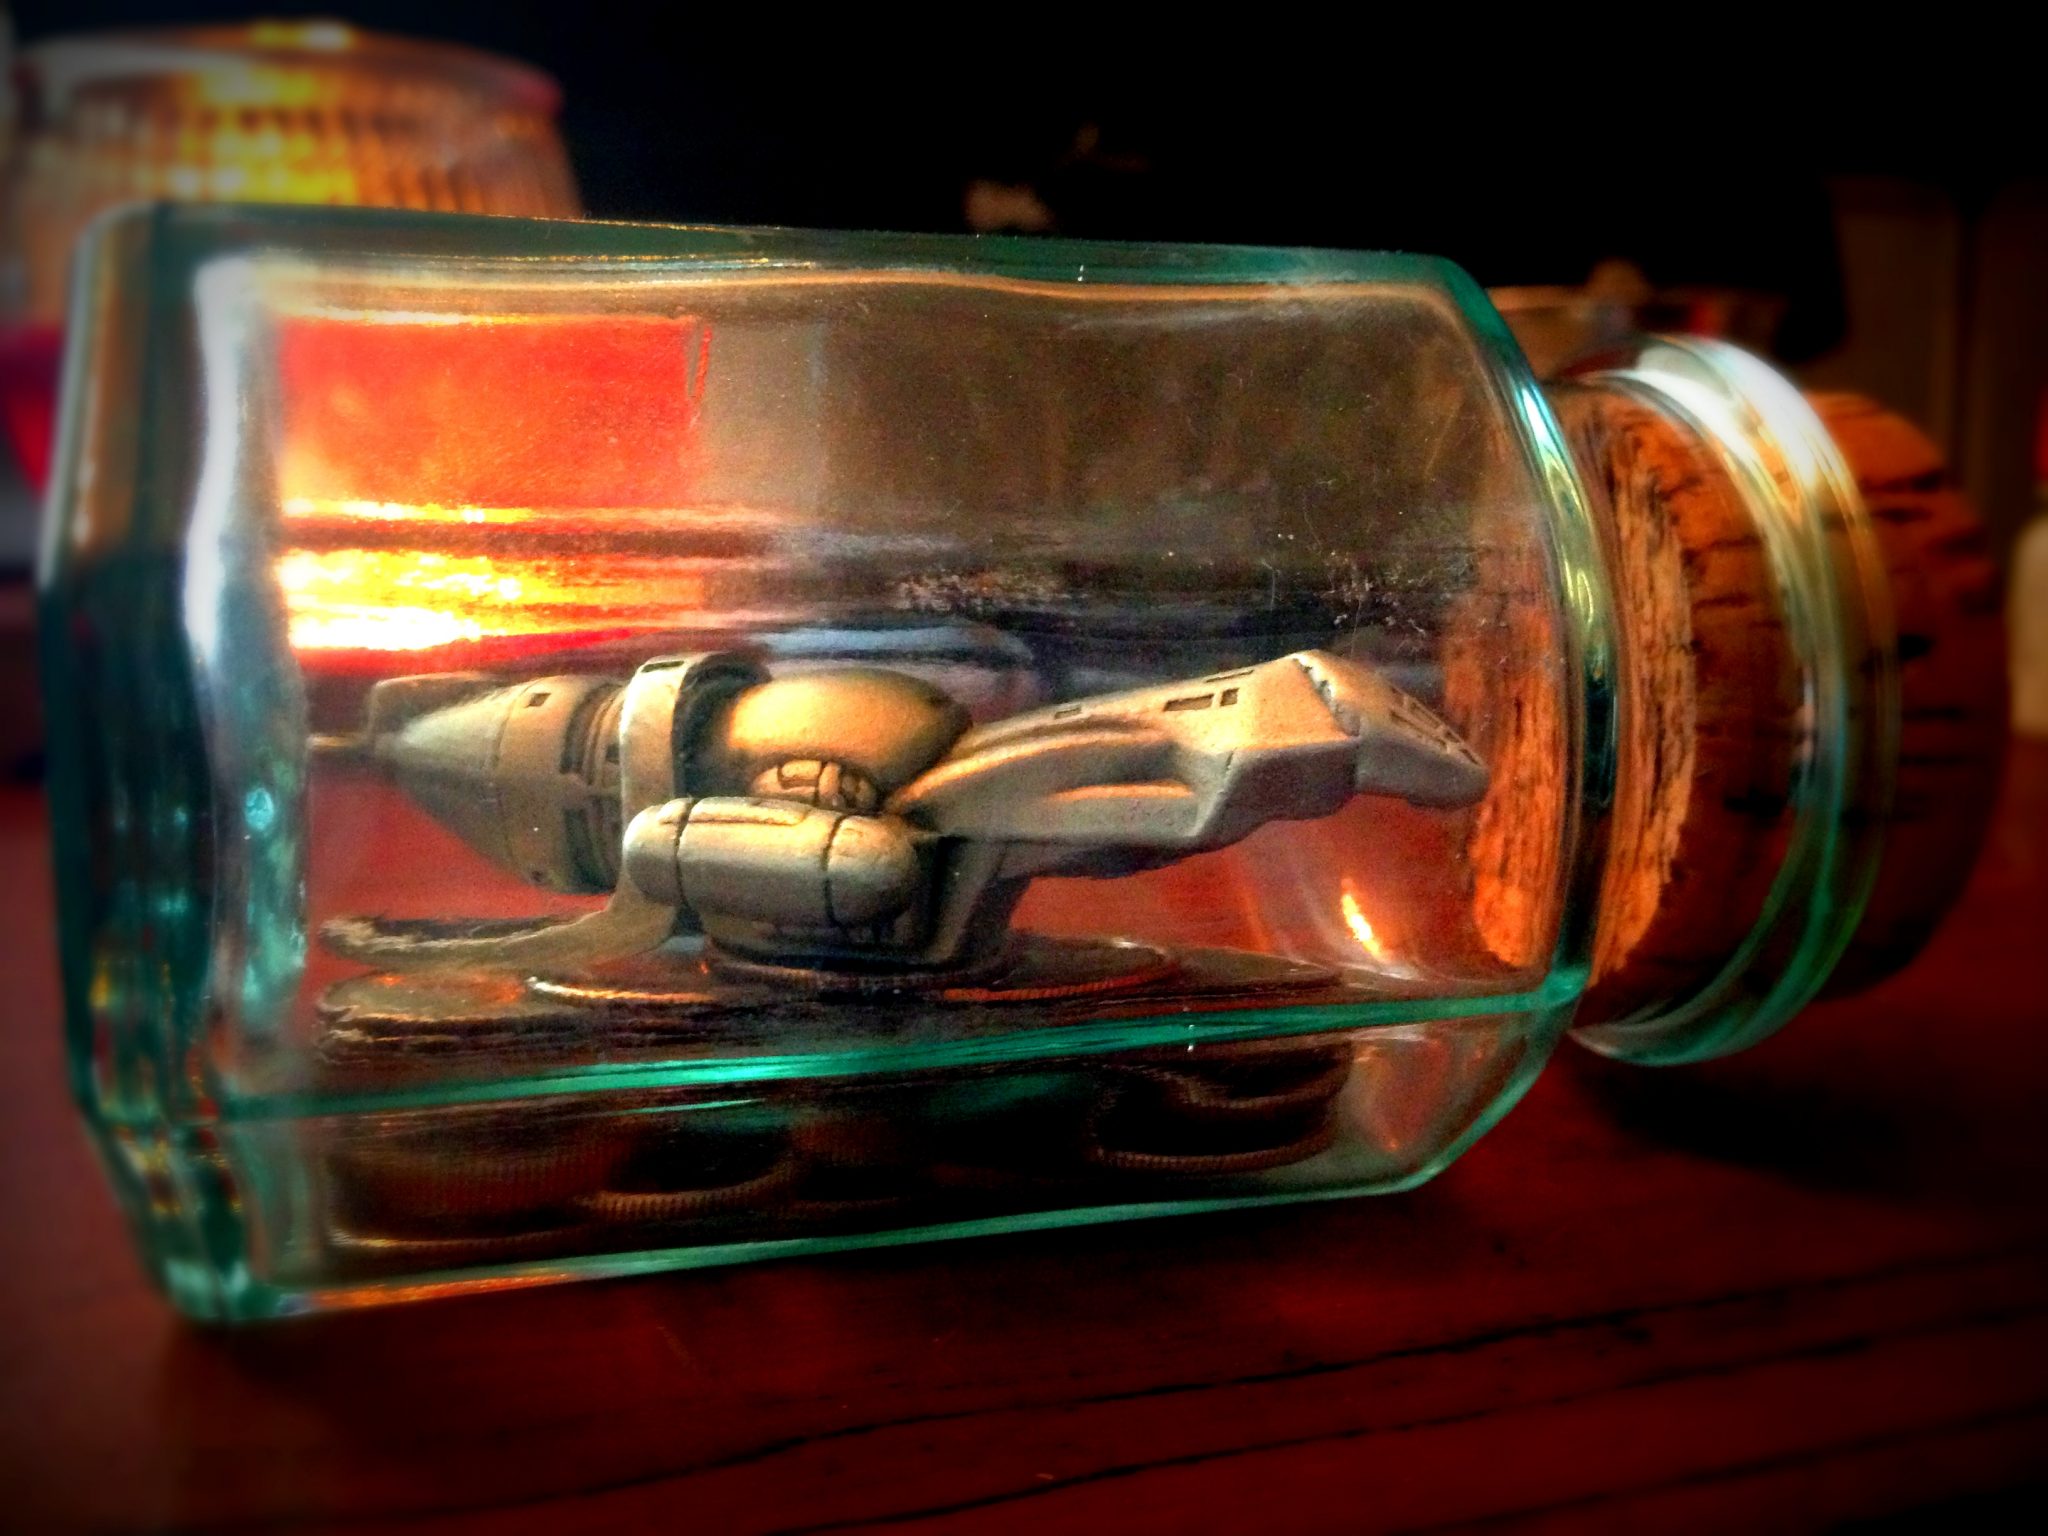 Firefly in a Jar